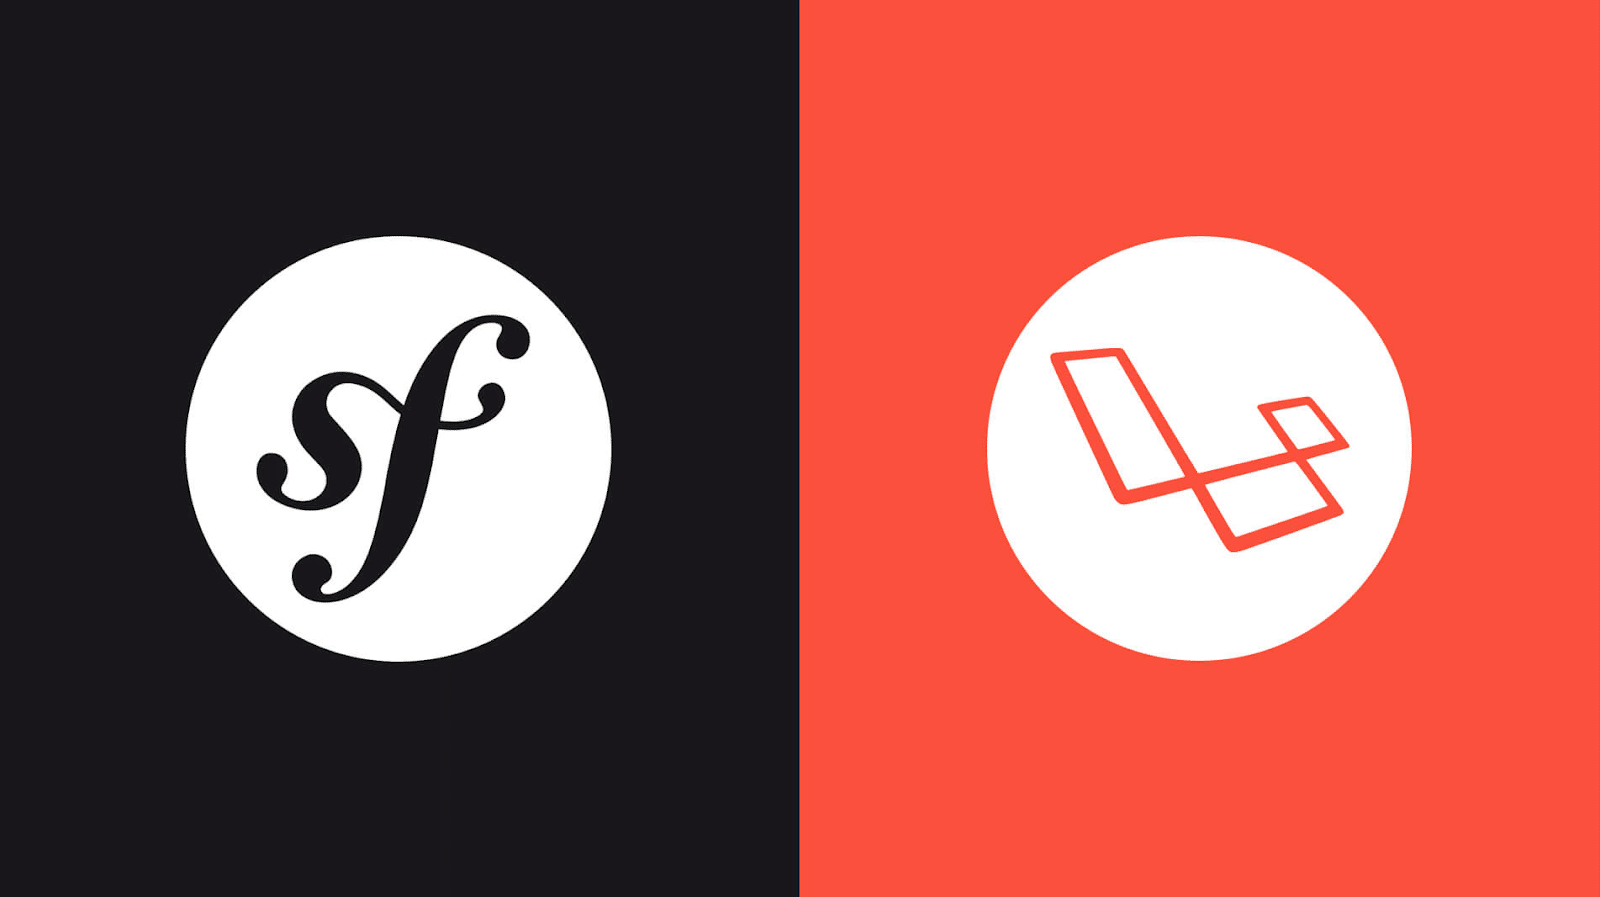 Symfony-logoet med initialerne "sf" i hvidt oven på en sort cirkel til venstre med den sorte baggrund og Laravel-logoet på en rød baggrund til højre.